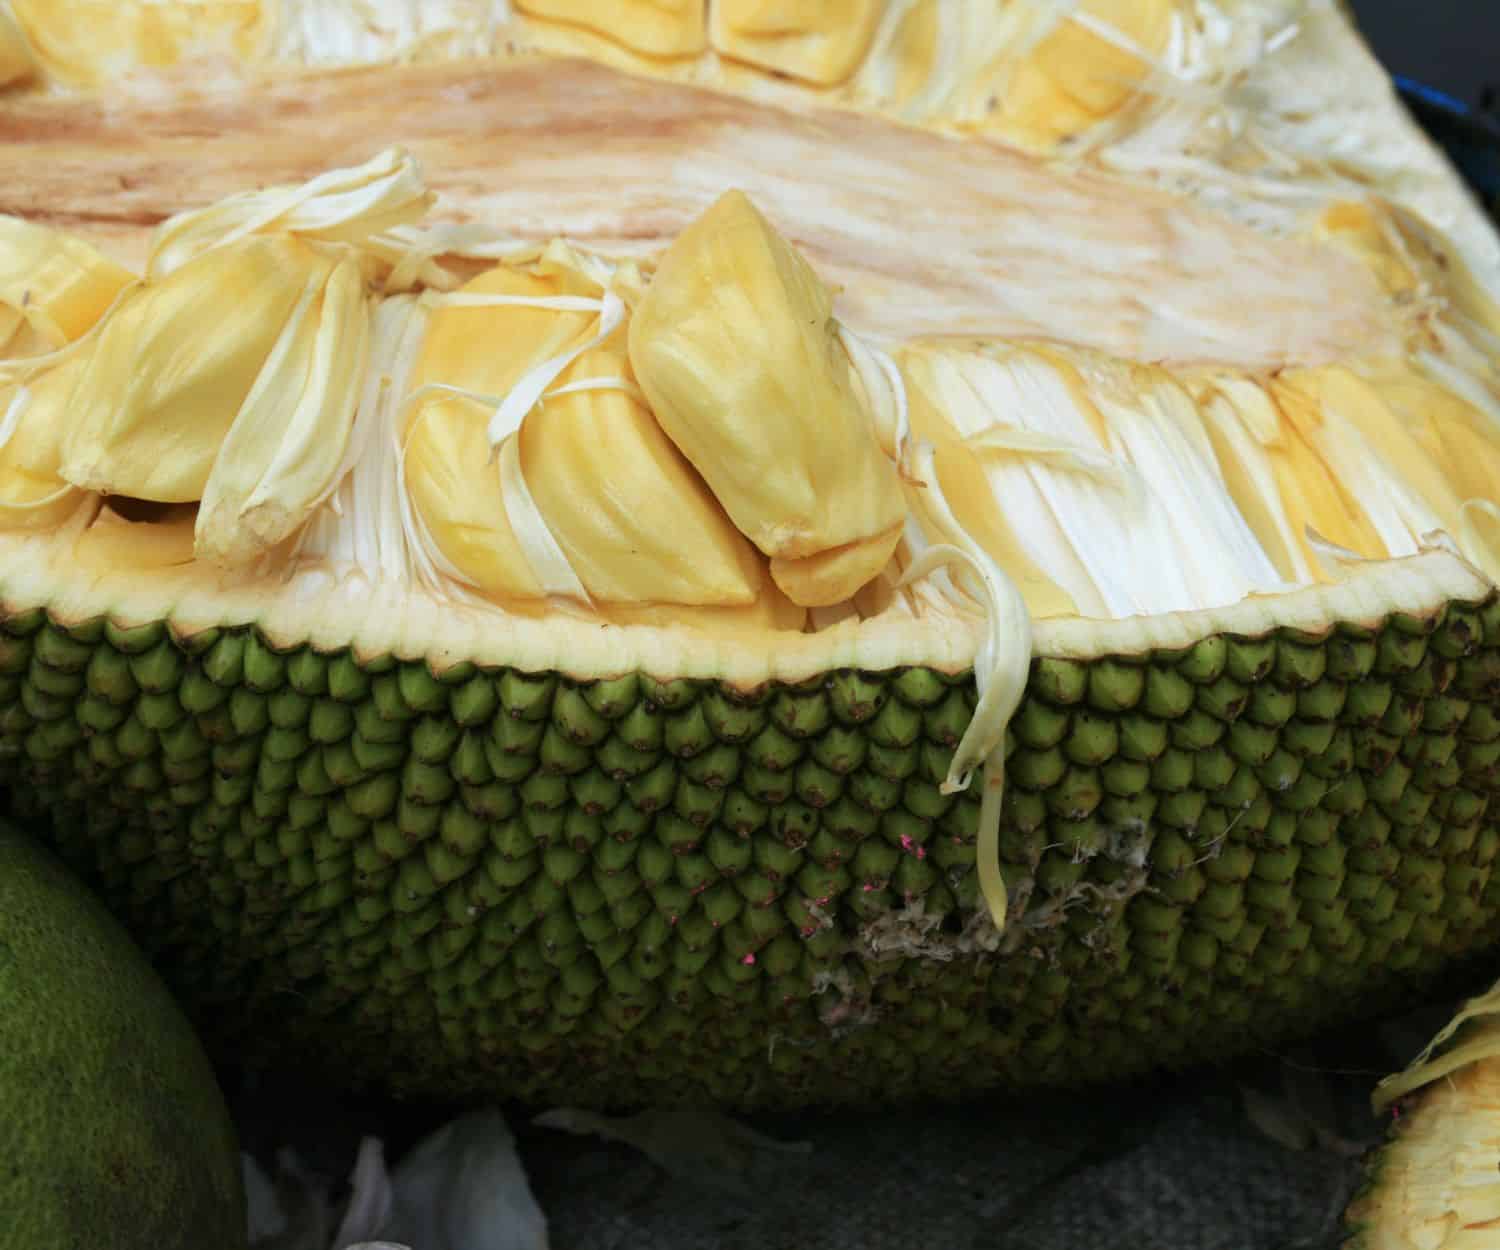 Side profile of a jackfruit cut in half.